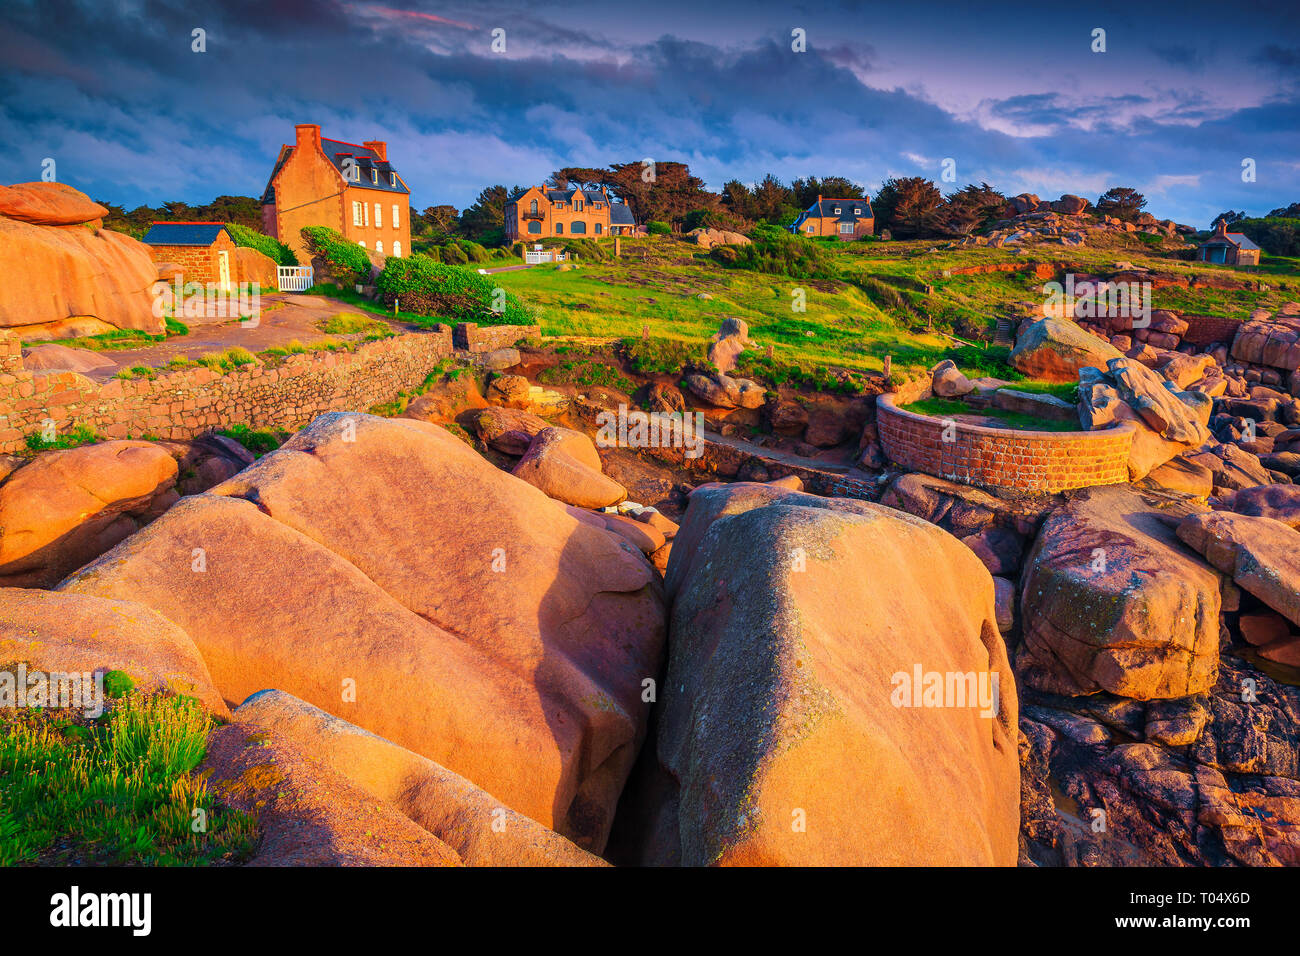 Spektakuläre Holiday villas mit bunten Granit Felsen bei Sonnenuntergang, Perros Guirec, Bretagne (Bretagne) Region, Frankreich und Europa Stockfoto